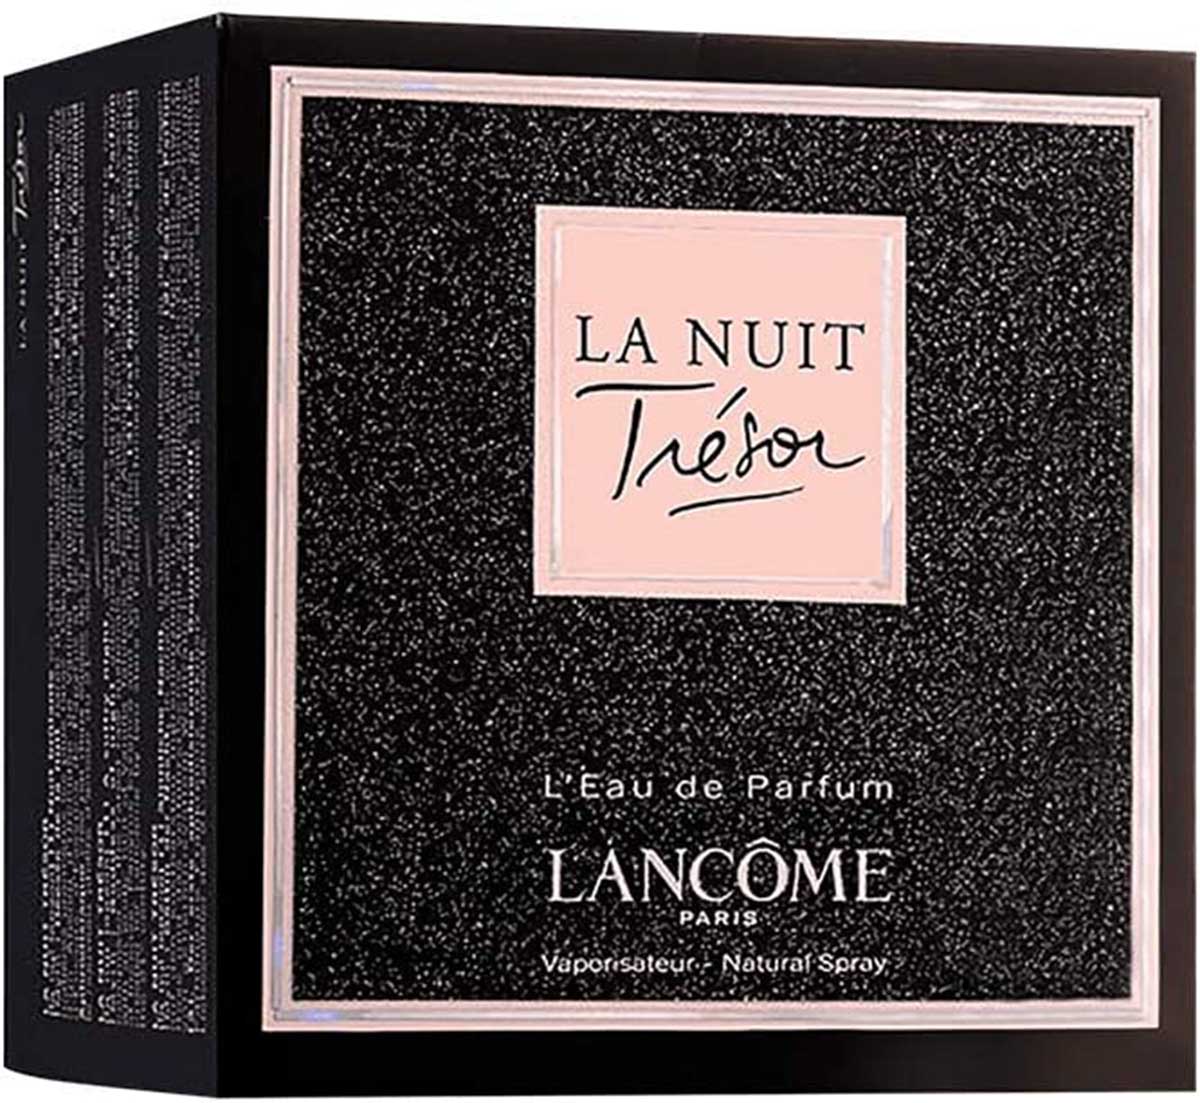 Lancome La Nuit Tresor Eau de Parfum, Perfume for Women, 1.7 Oz - image 3 of 5